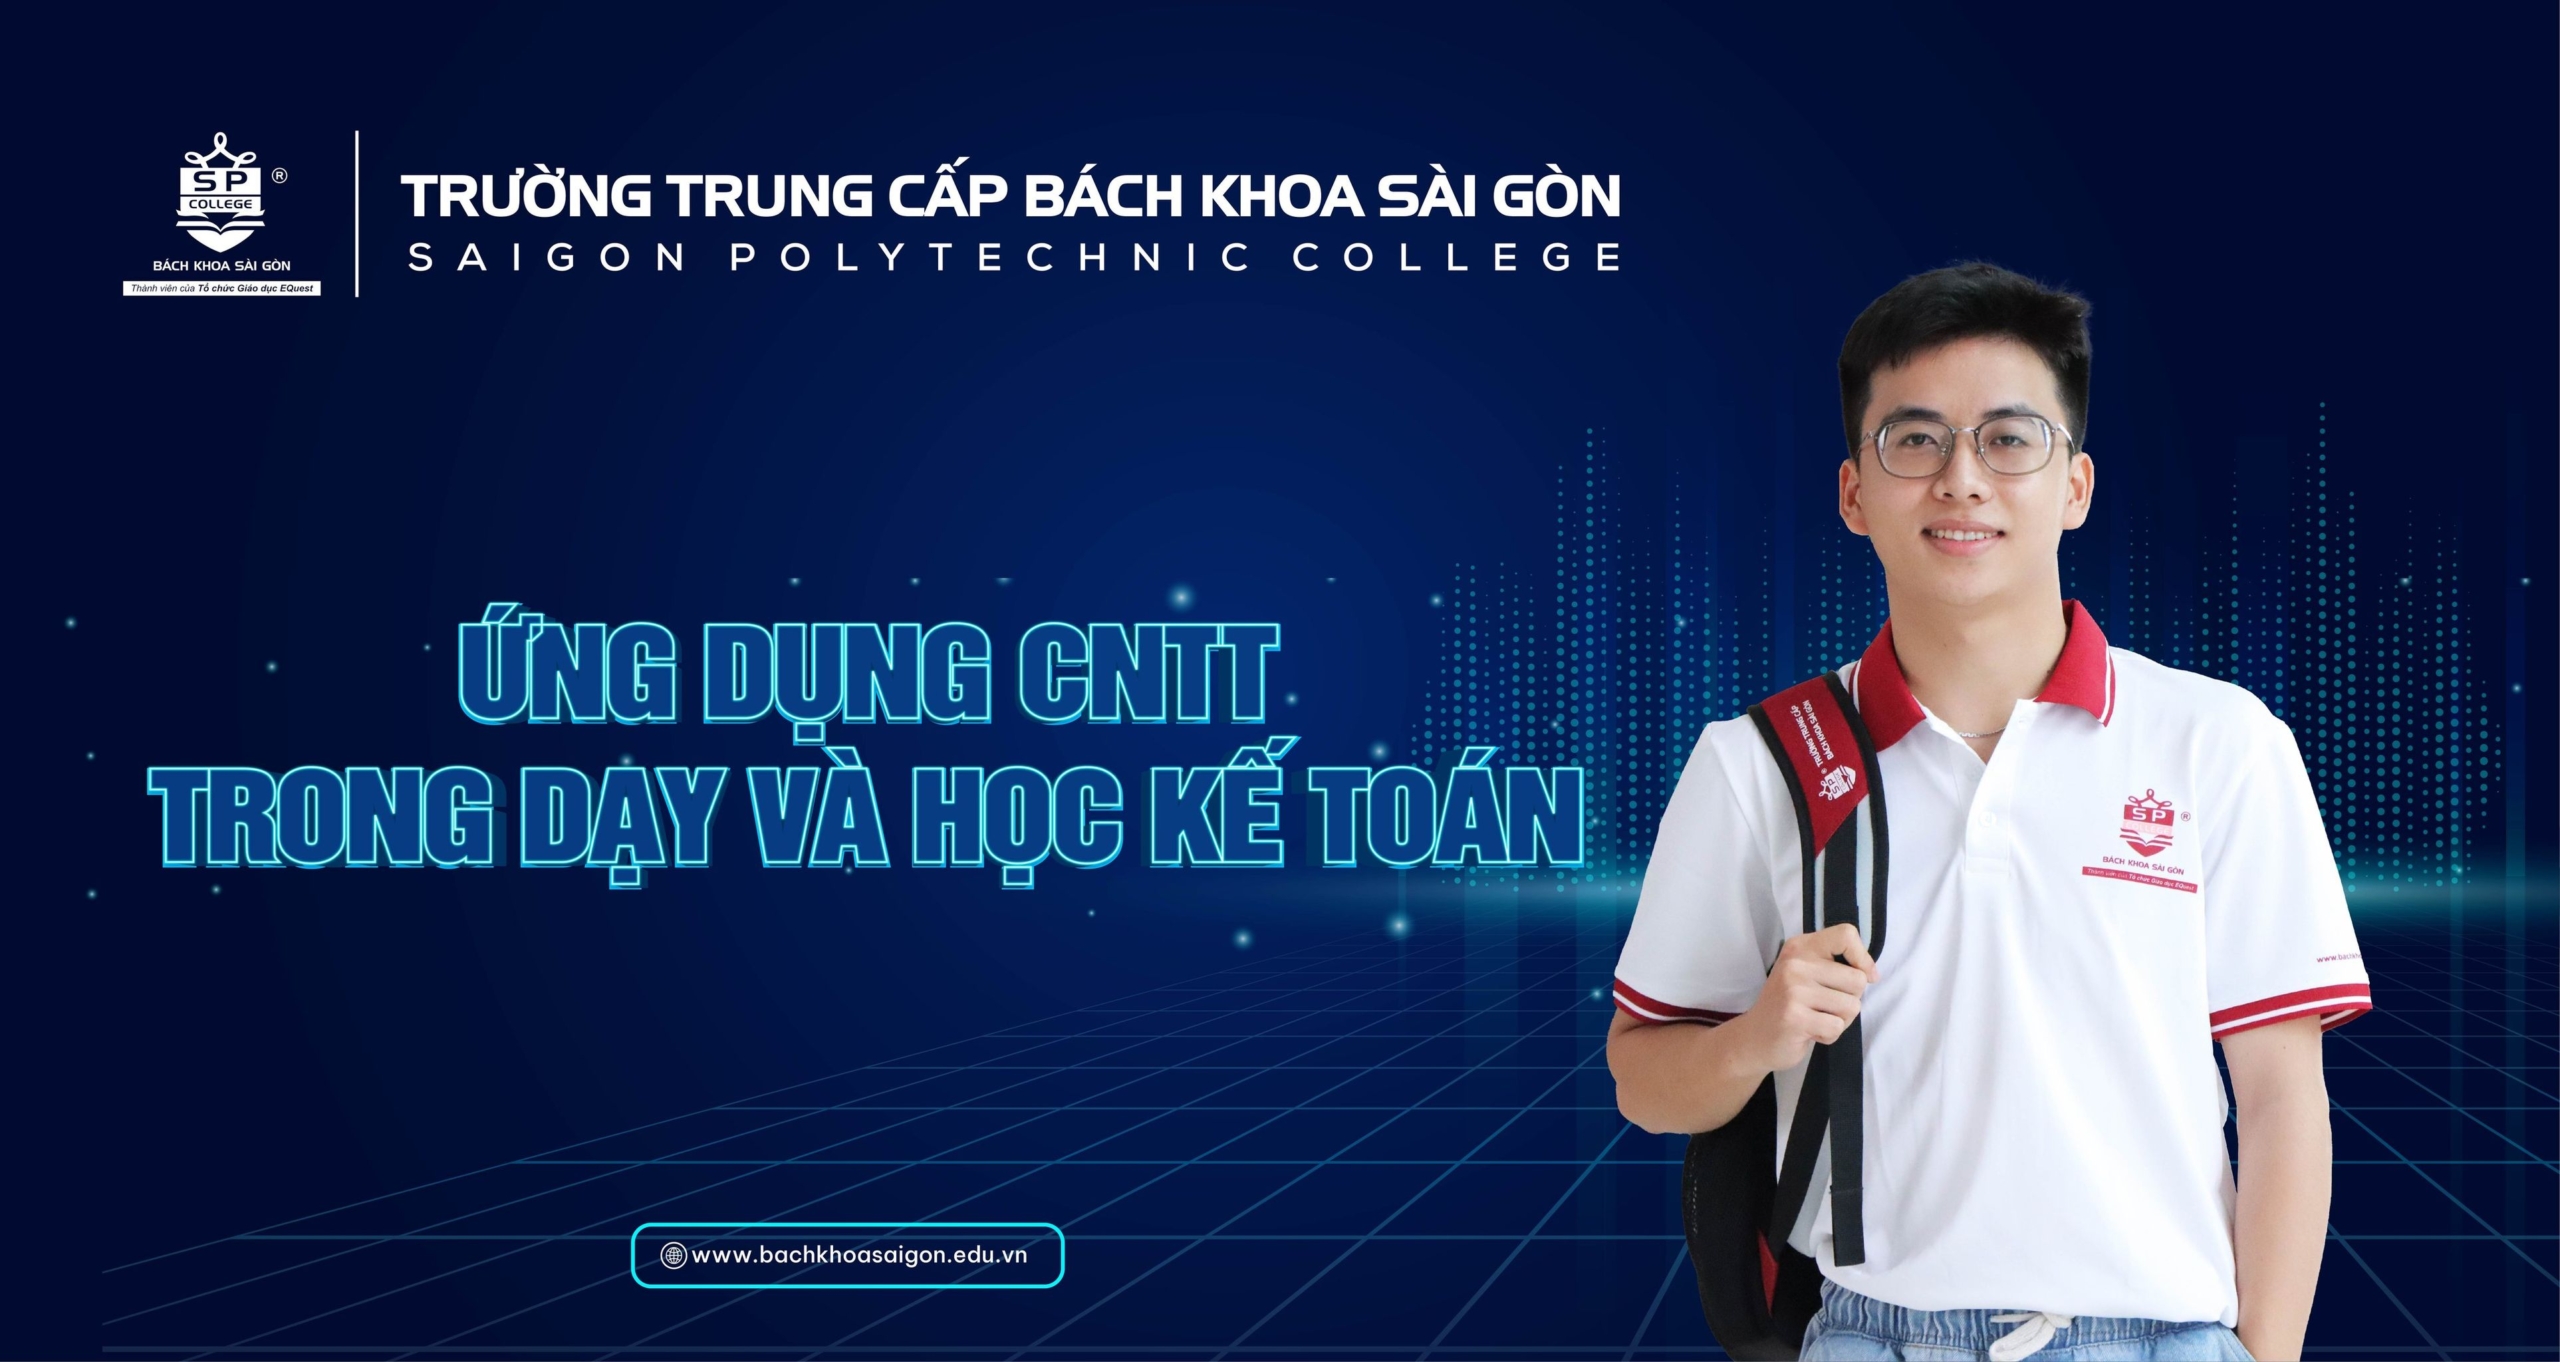 Trường TC Bách Khoa Sài Gòn ứng dụng CNTT trong đạy và học kế toán